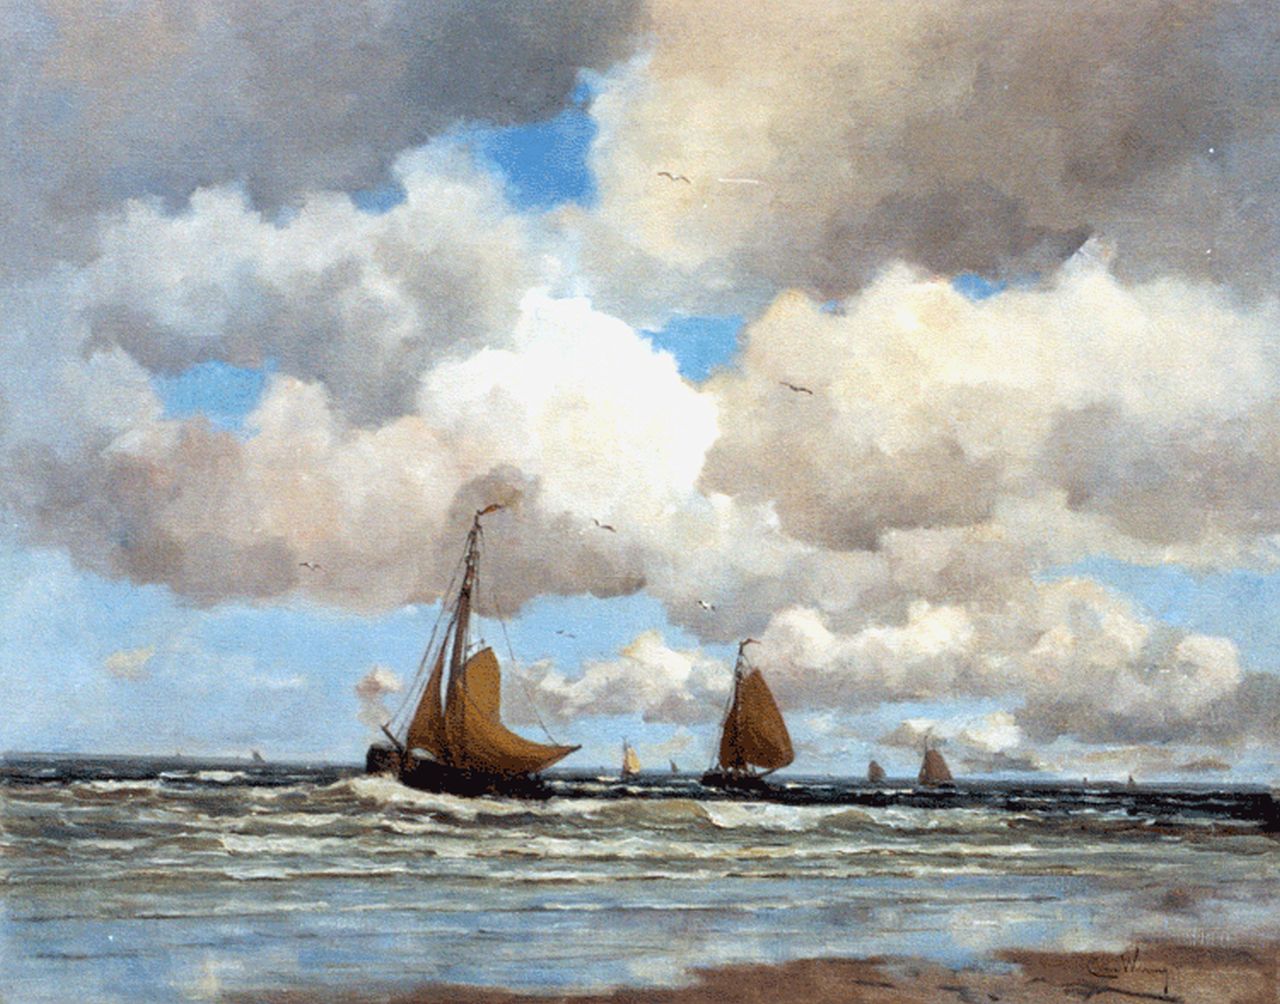 Waning C.A. van | Cornelis Anthonij 'Kees' van Waning, Thuiskomst van de vissersvloot, olieverf op doek 78,0 x 98,0 cm, gesigneerd rechtsonder